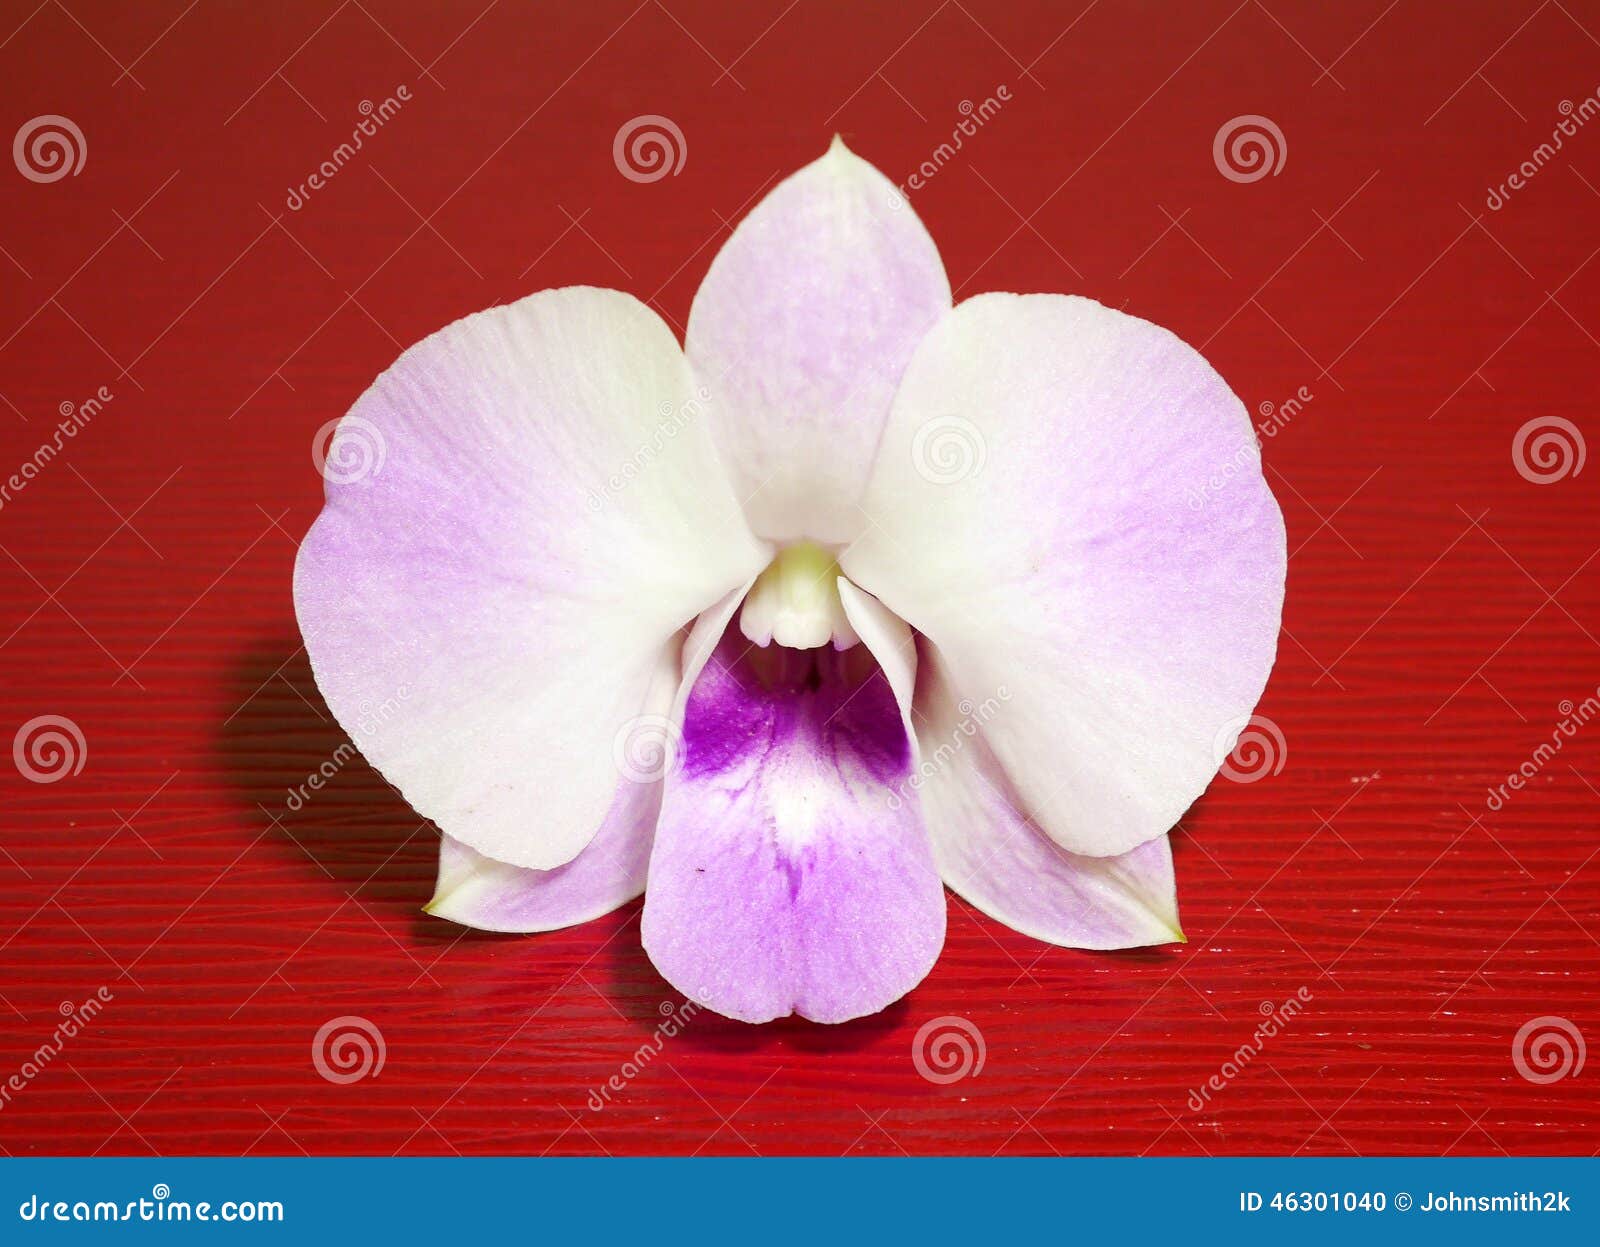 Details 100 picture orquideas blancas y violetas